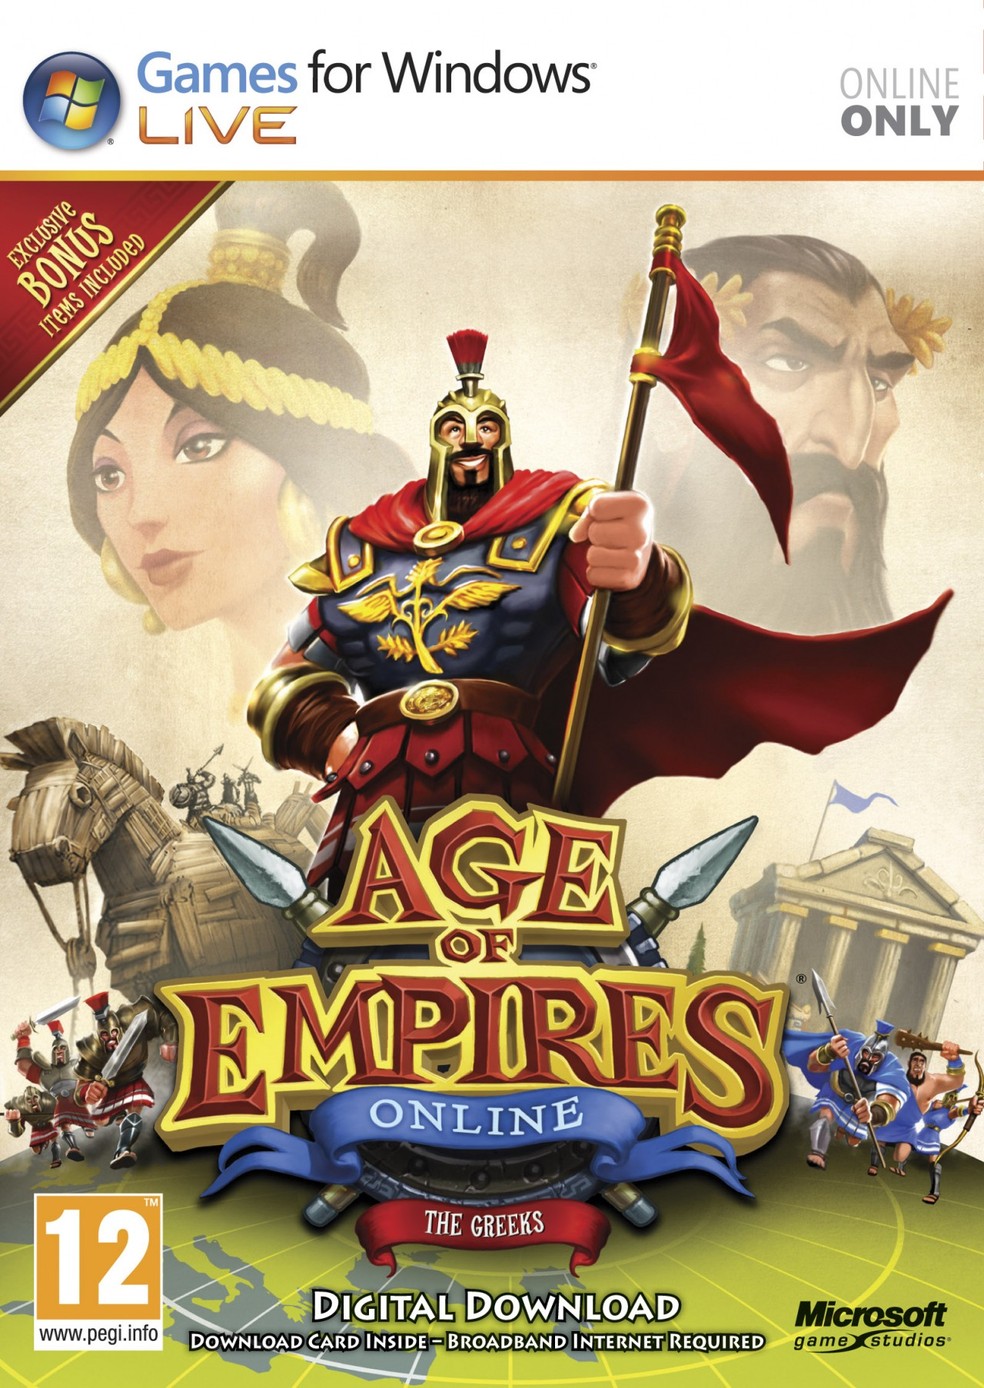 Jogos da série Age of Empires são oficialmente confirmados para